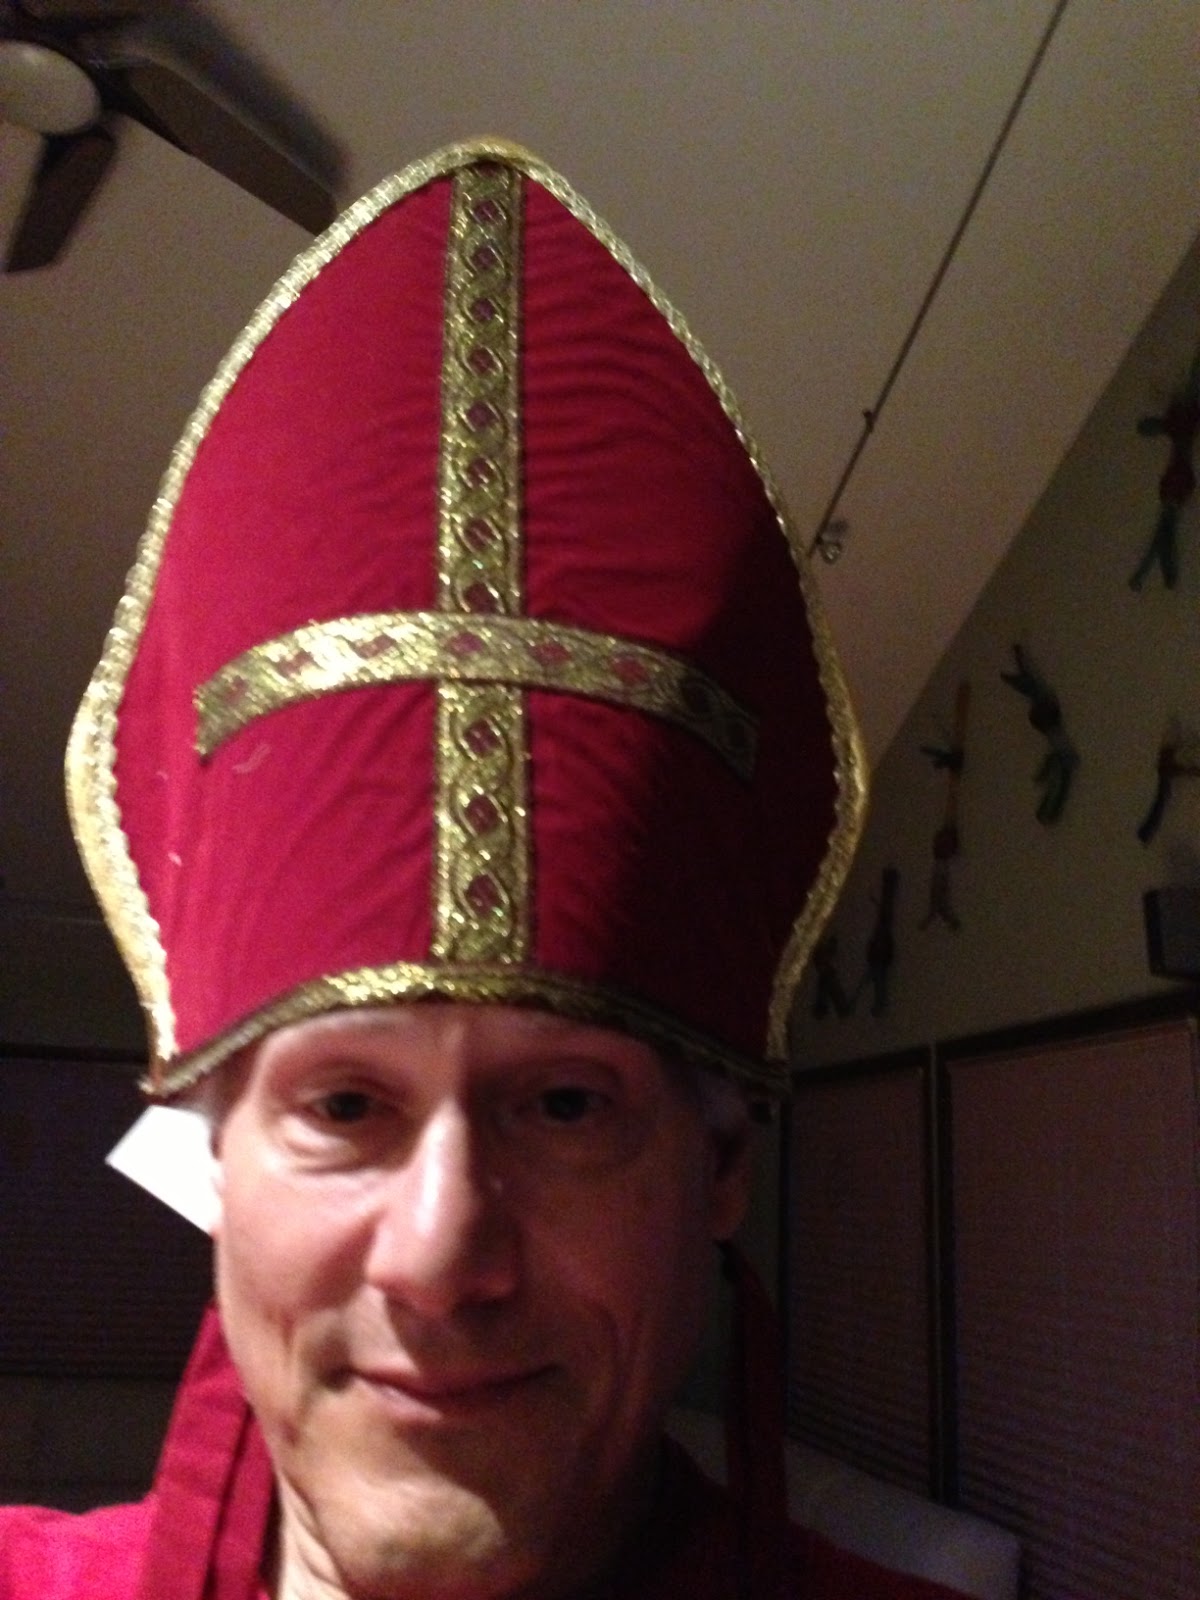 http://4.bp.blogspot.com/-nhIouU9tWnM/UhuXnHrtMqI/AAAAAAAAFXU/WxH5L6L9SoE/s1600/pope+hat.JPG